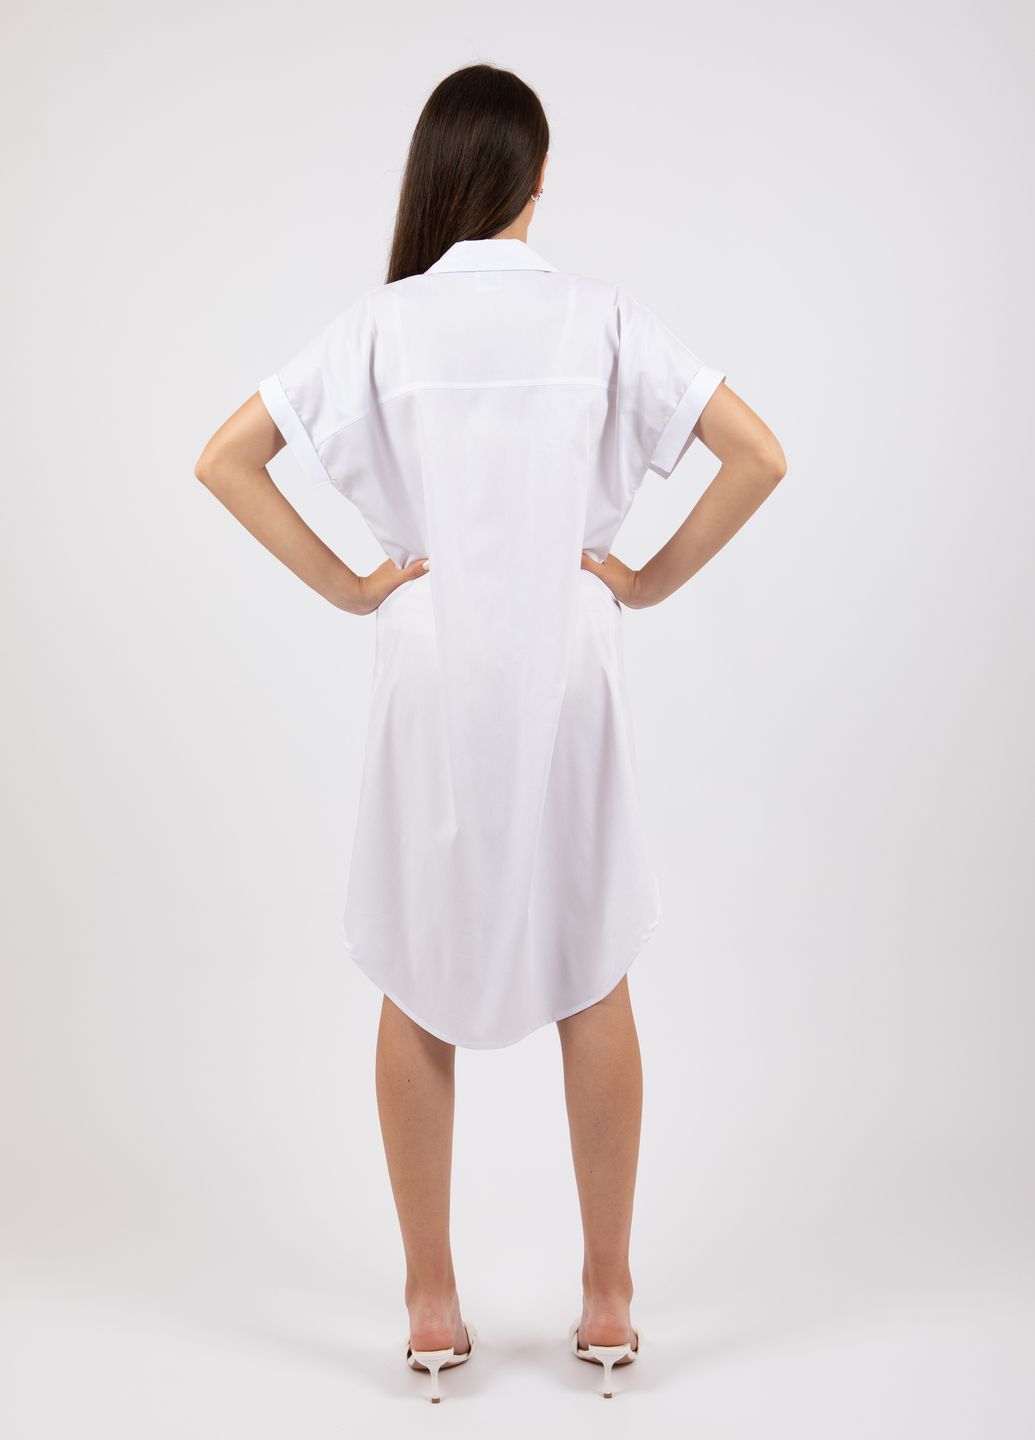 Купить Оверсайз хлопковое платье-рубашка Merlini Руан 700000007 - Белый, 42-44 в интернет-магазине